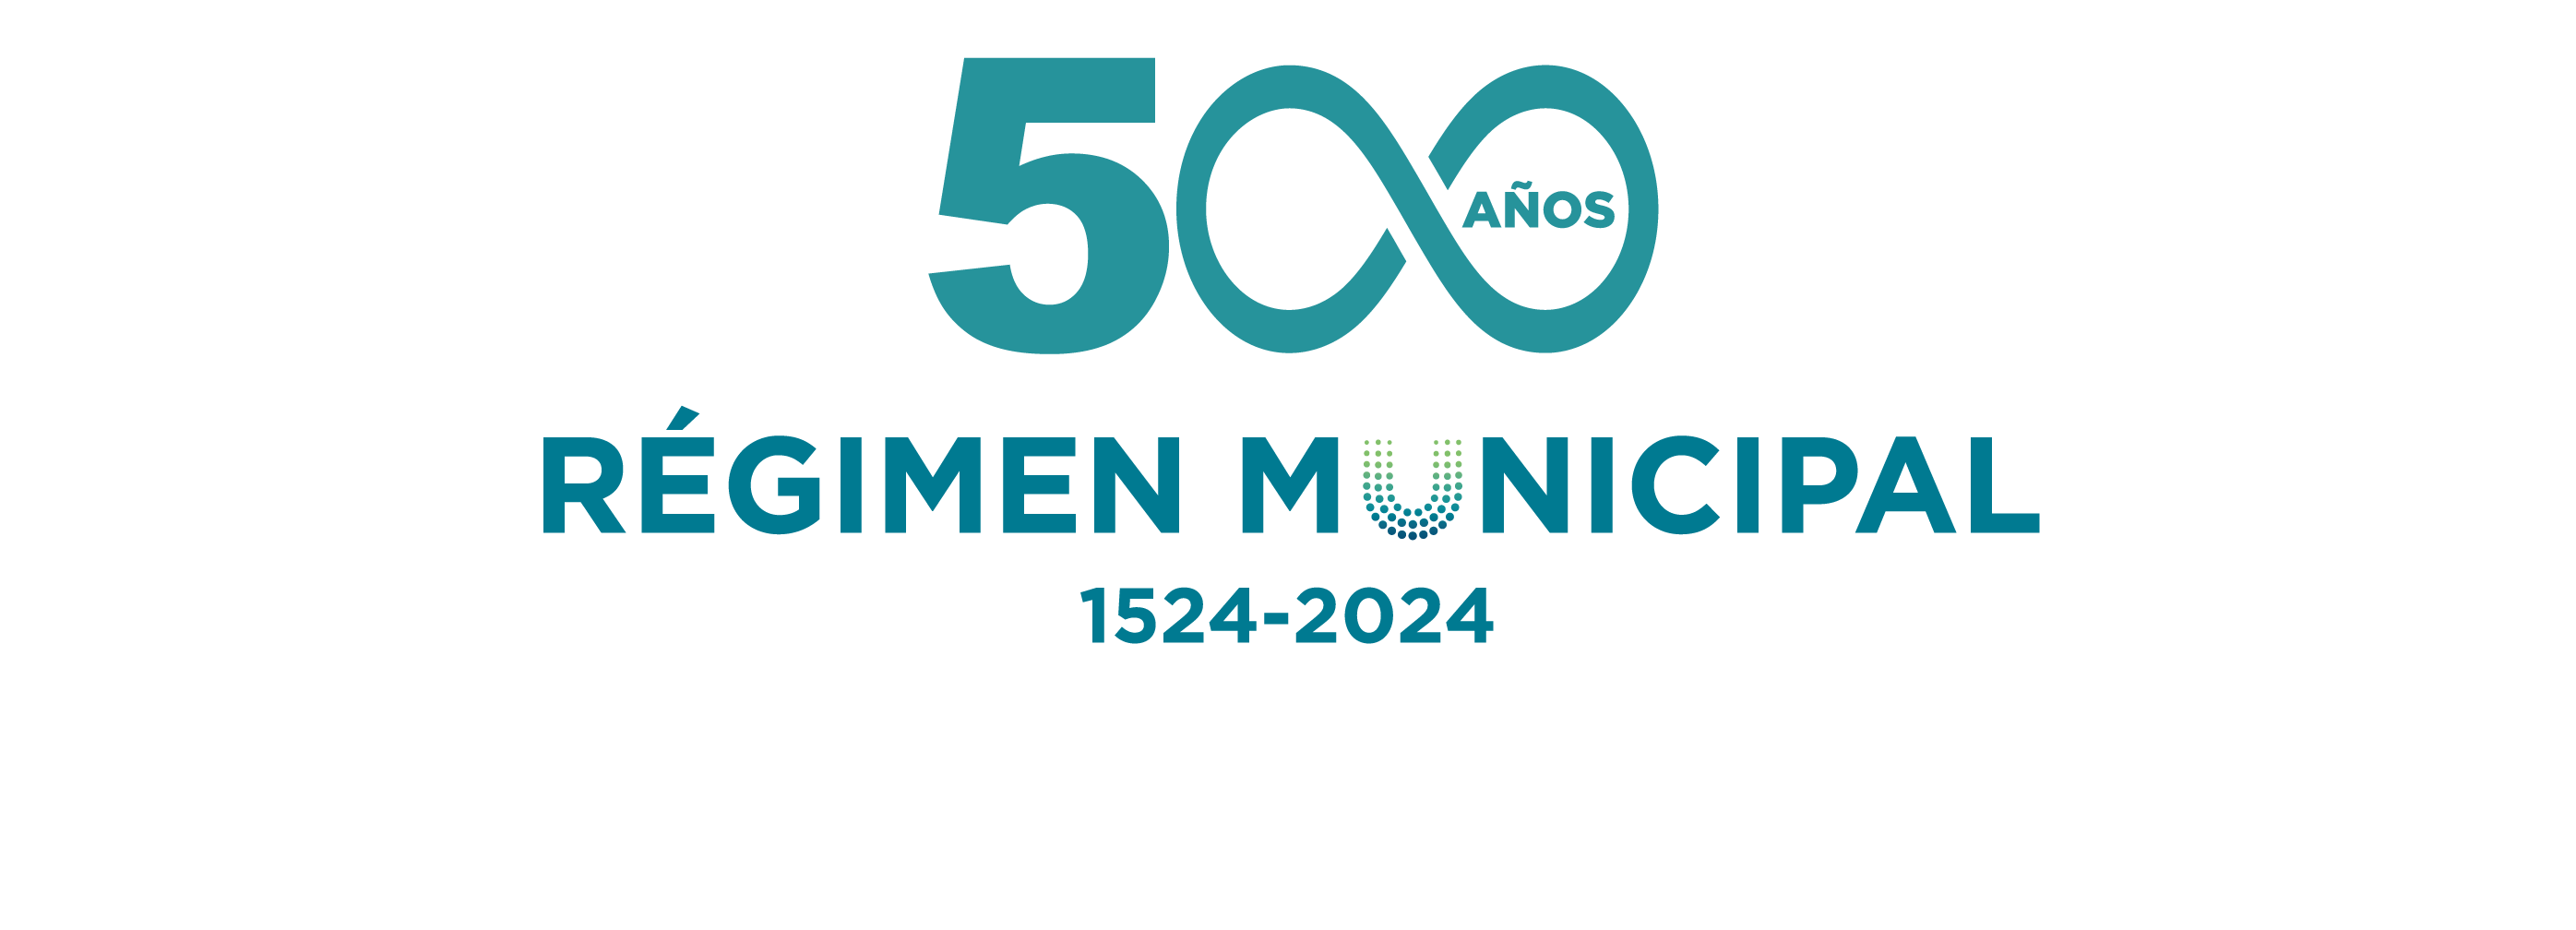 UNGL conmemora medio milenio de historia municipal: 500 años del primer municipio en Costa Rica